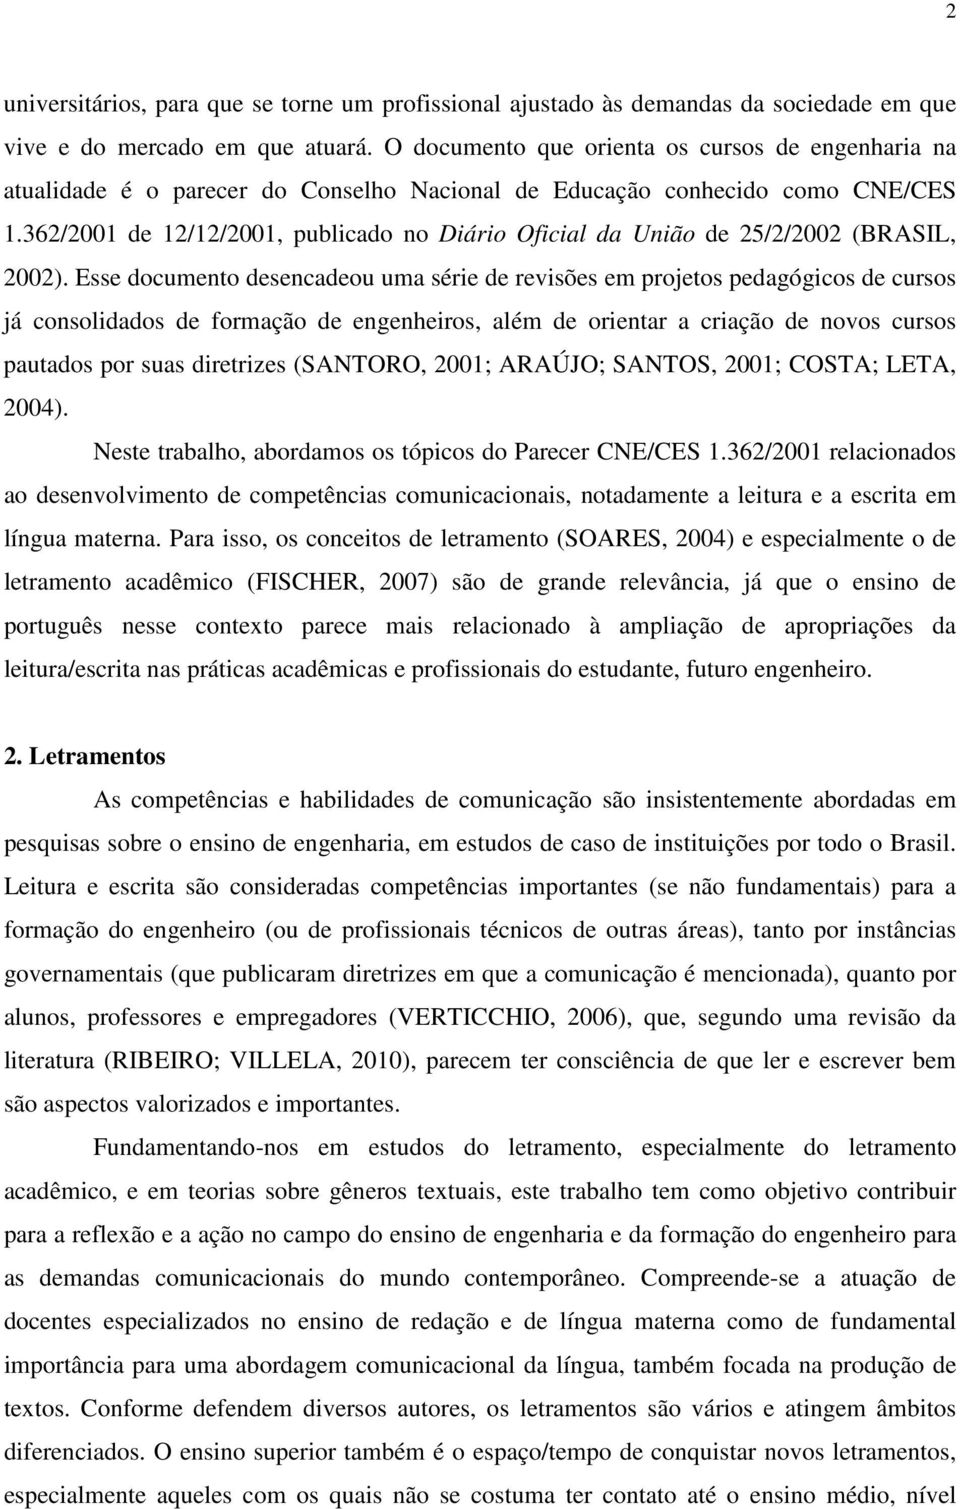 362/2001 de 12/12/2001, publicado no Diário Oficial da União de 25/2/2002 (BRASIL, 2002).